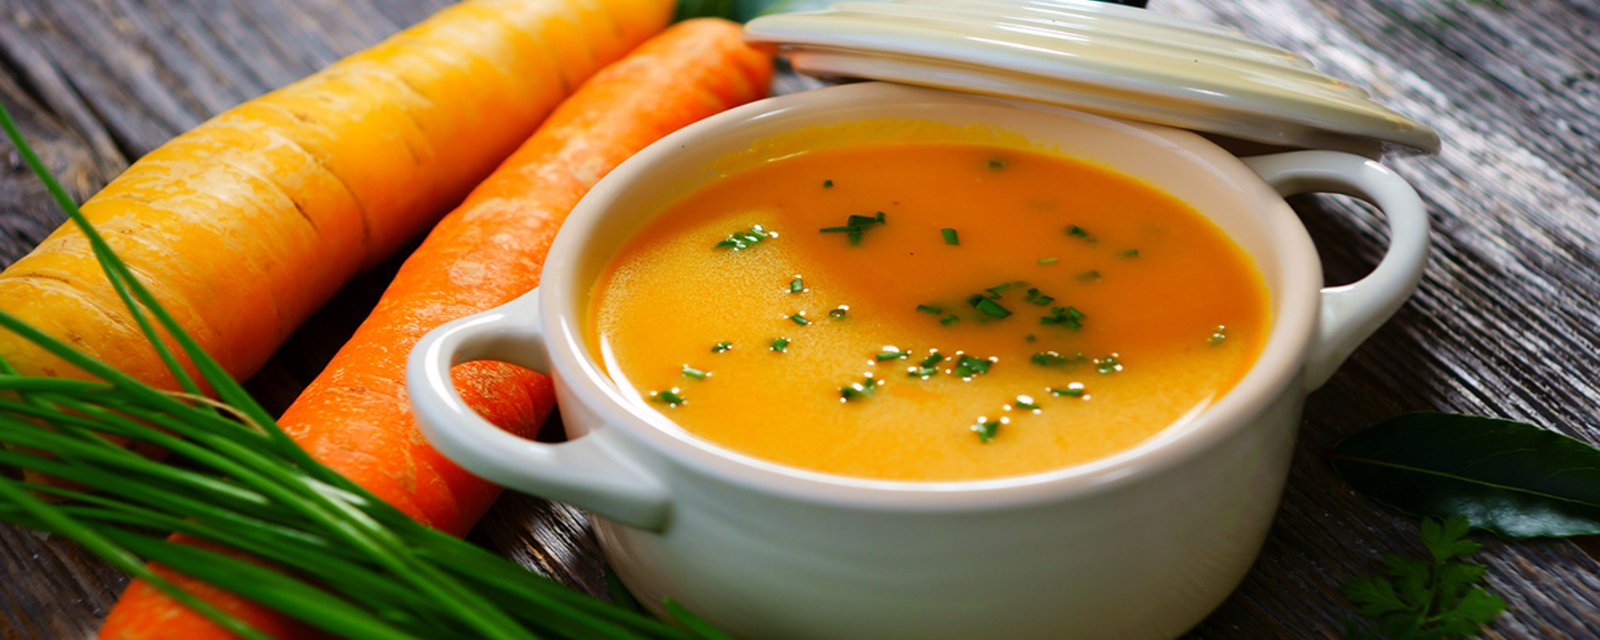 Velouté de carottes aux pommes et lait de coco : c'est tout simplement délicieux!